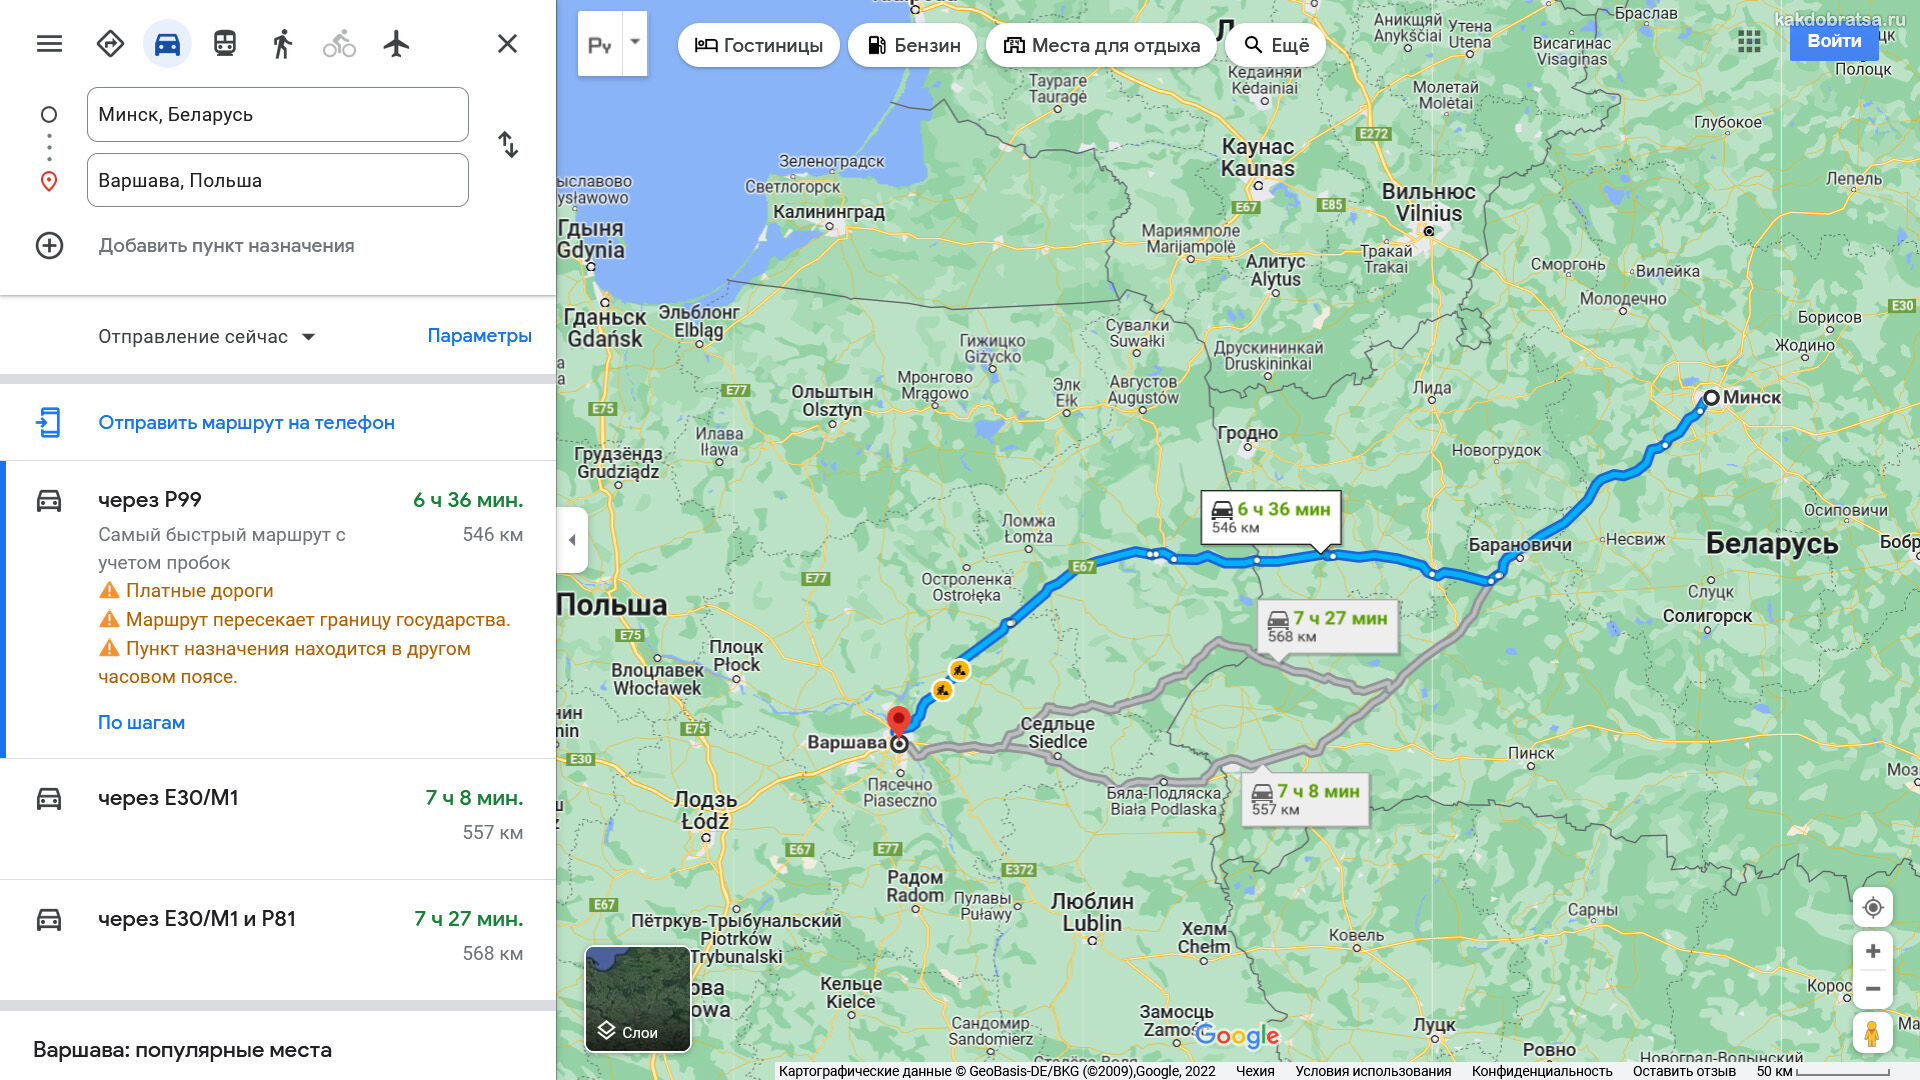 Расстояние между Минском и Варшавой и путь по карте